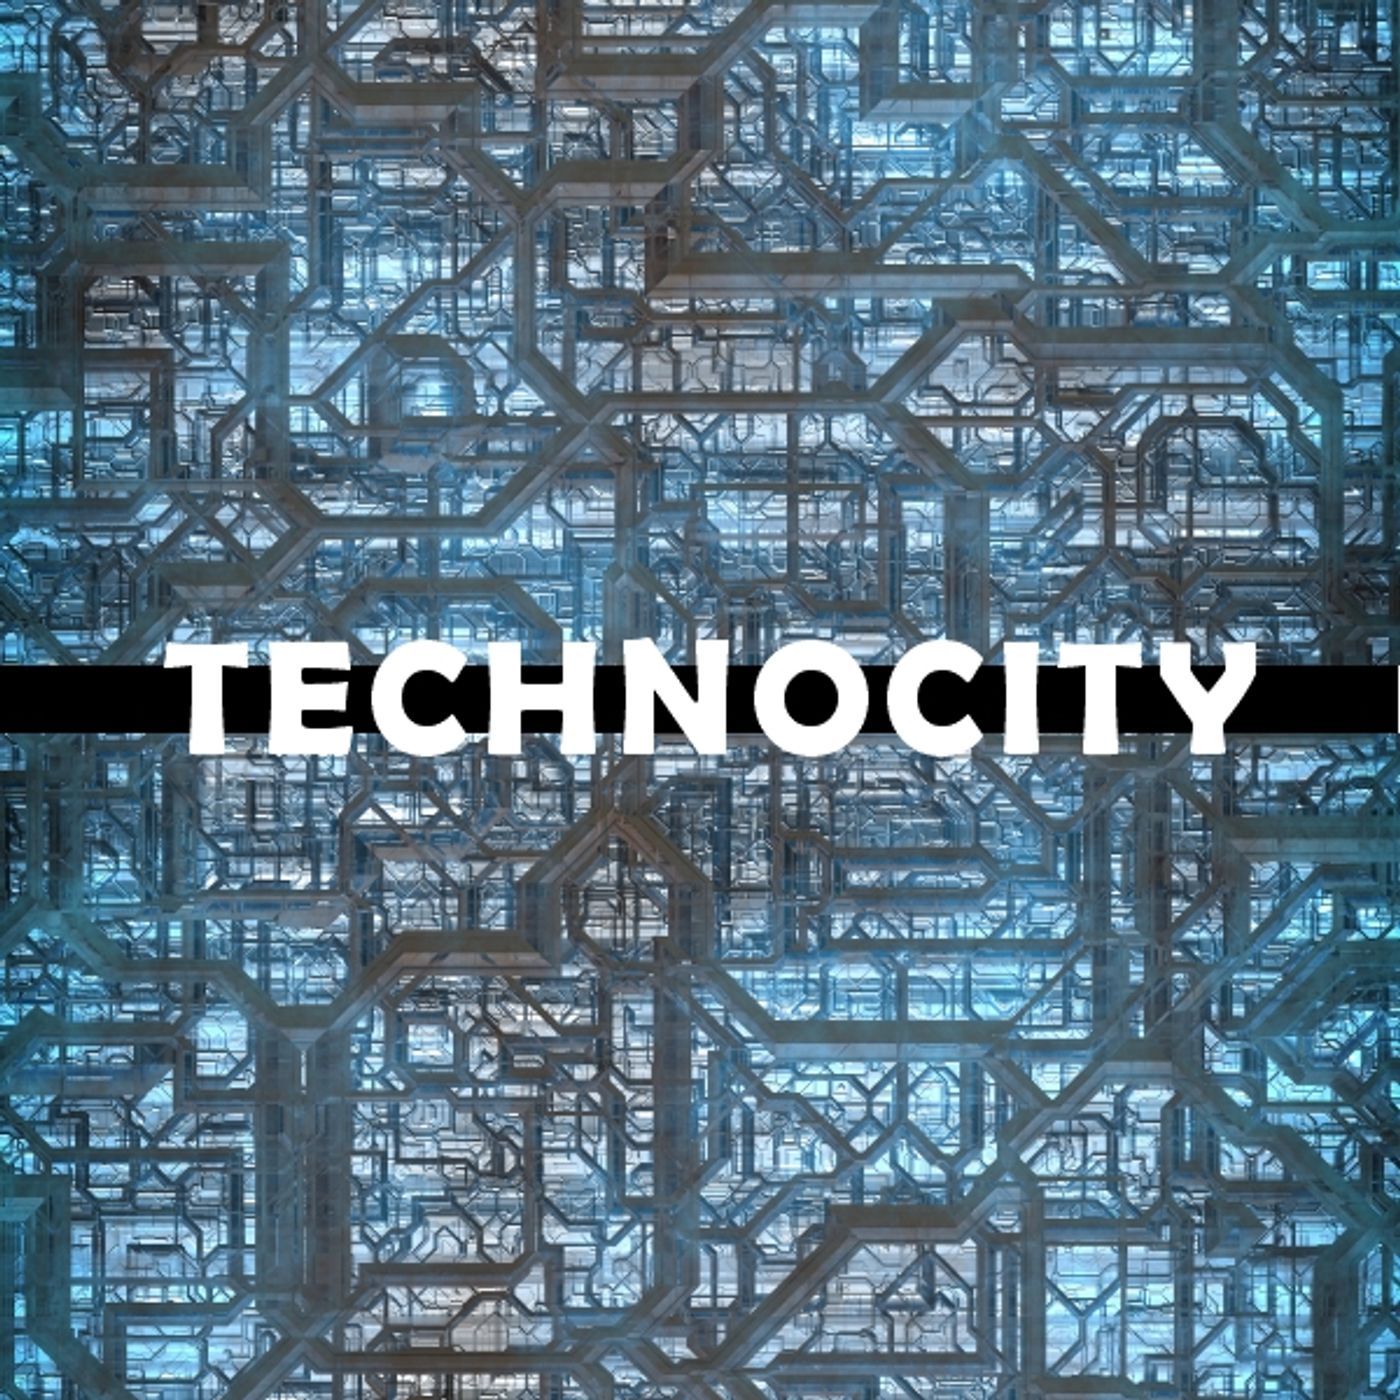 Technocity